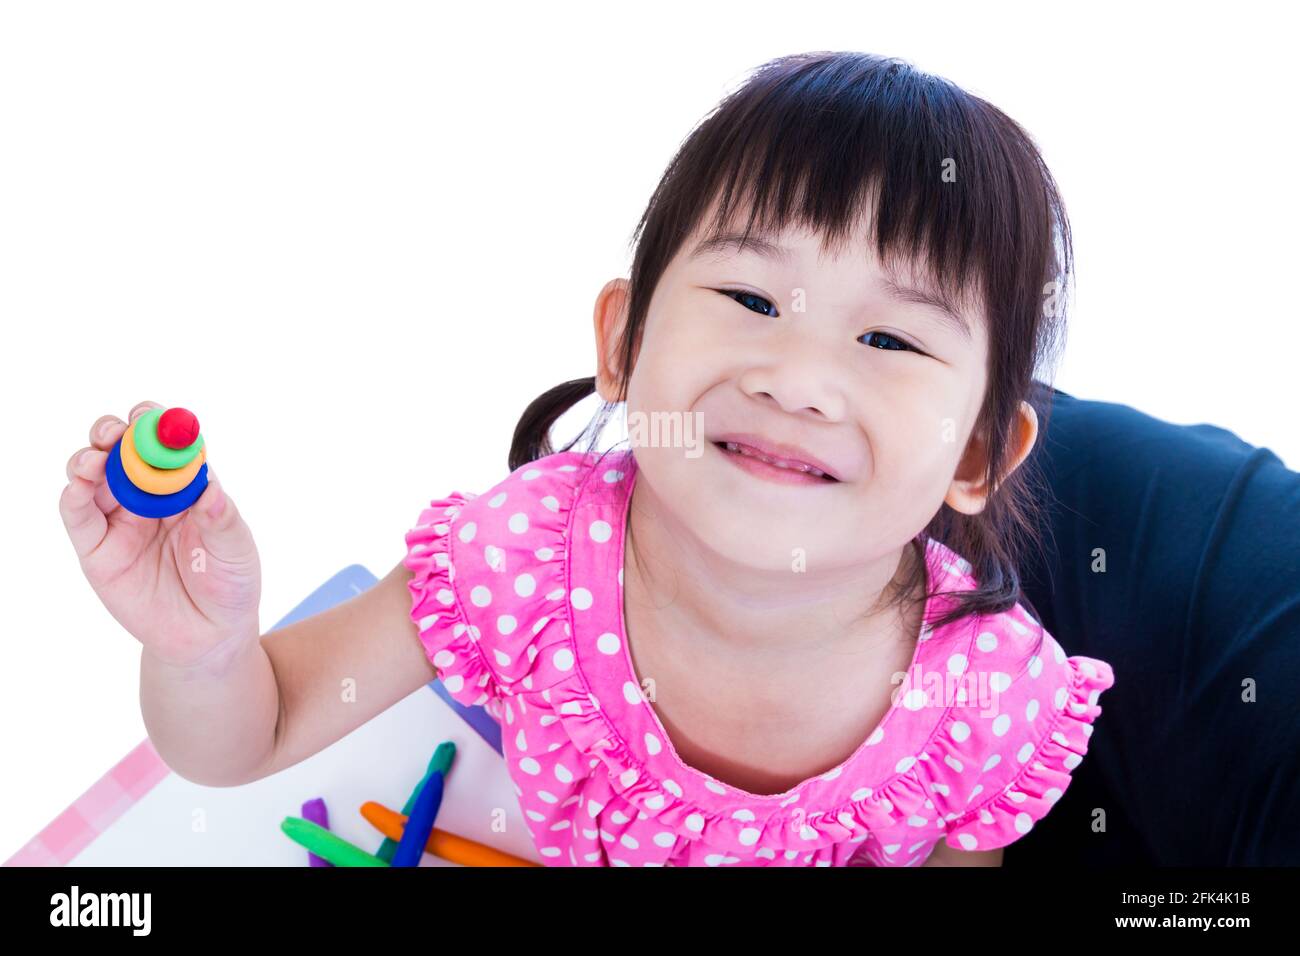 Petite fille asiatique jouant et créant des jouets à partir de la pâte de jeu. Enfant souriant et de montrer ses œuvres de l'argile, sur fond blanc. Renforcer l'imagination Banque D'Images